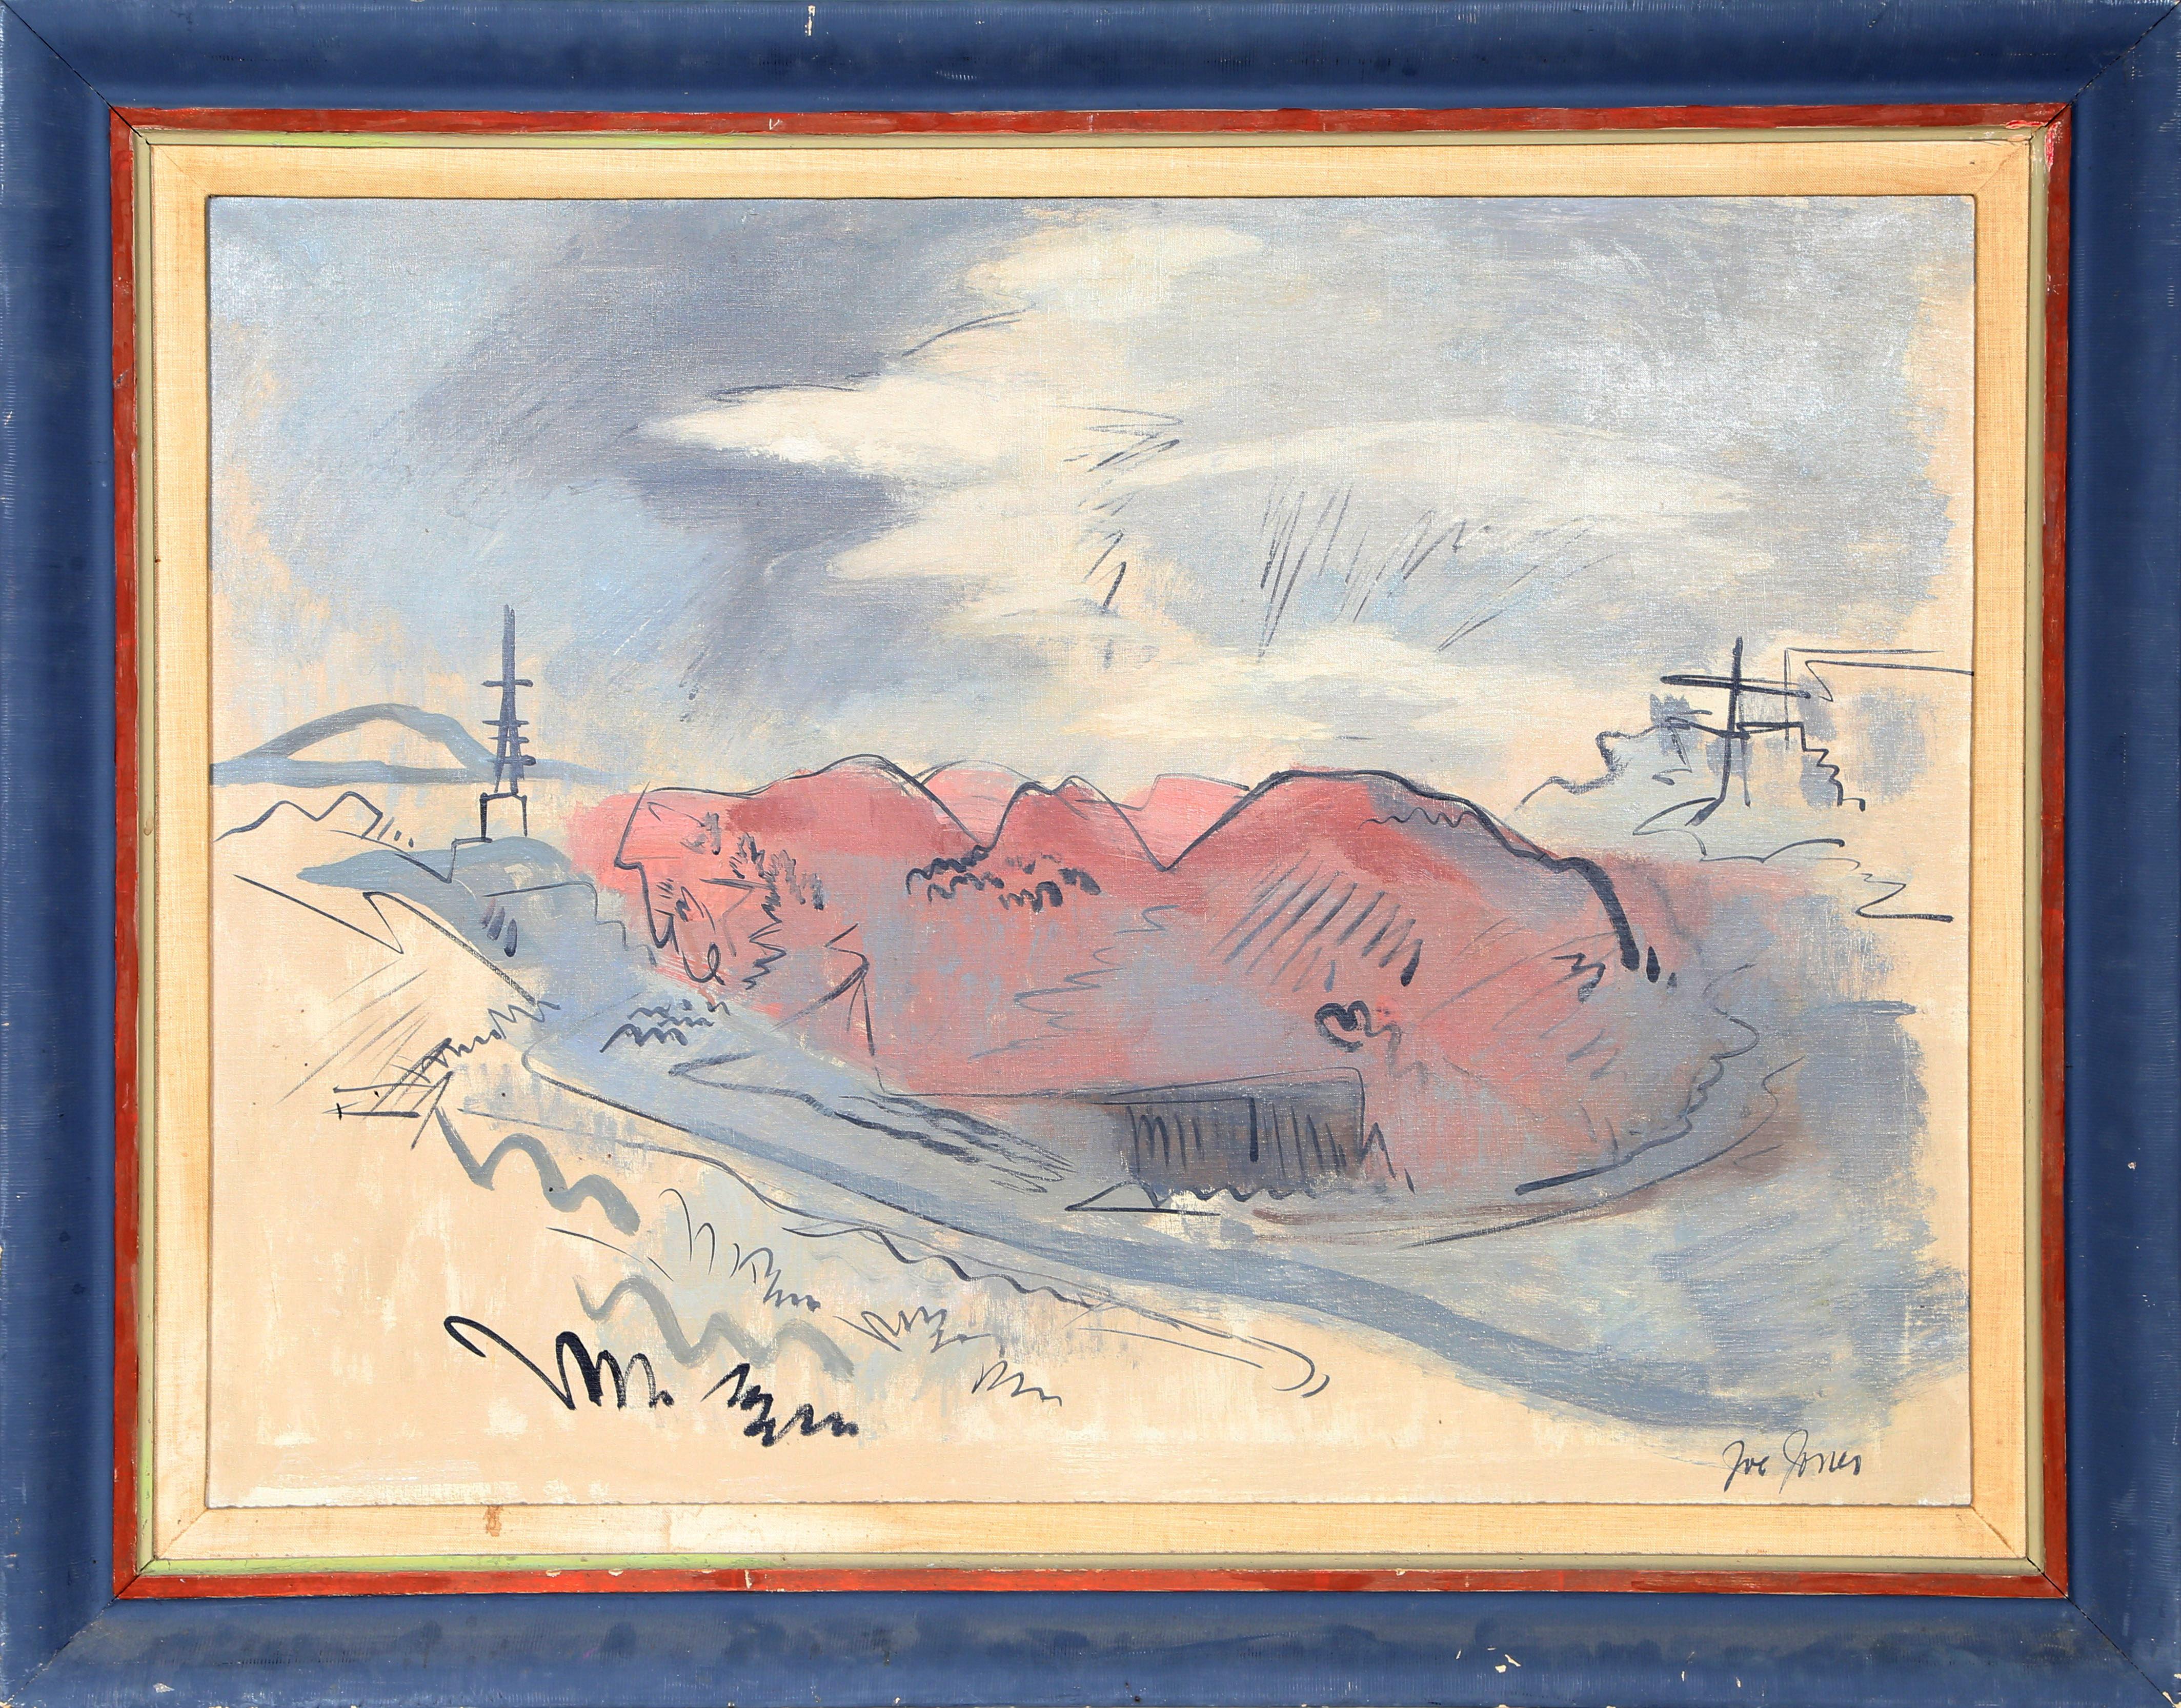 Un paysage simplifié peint à l'huile par Joe Jones. Cette pièce bicolore est joliment encadrée et signée.

Paysage moderne
Joe Jones, Américain (1909-1963)
Date : vers 1940
Huile sur toile, signée en bas à droite
Taille : 29.5 x 39.5 in. (74.93 x